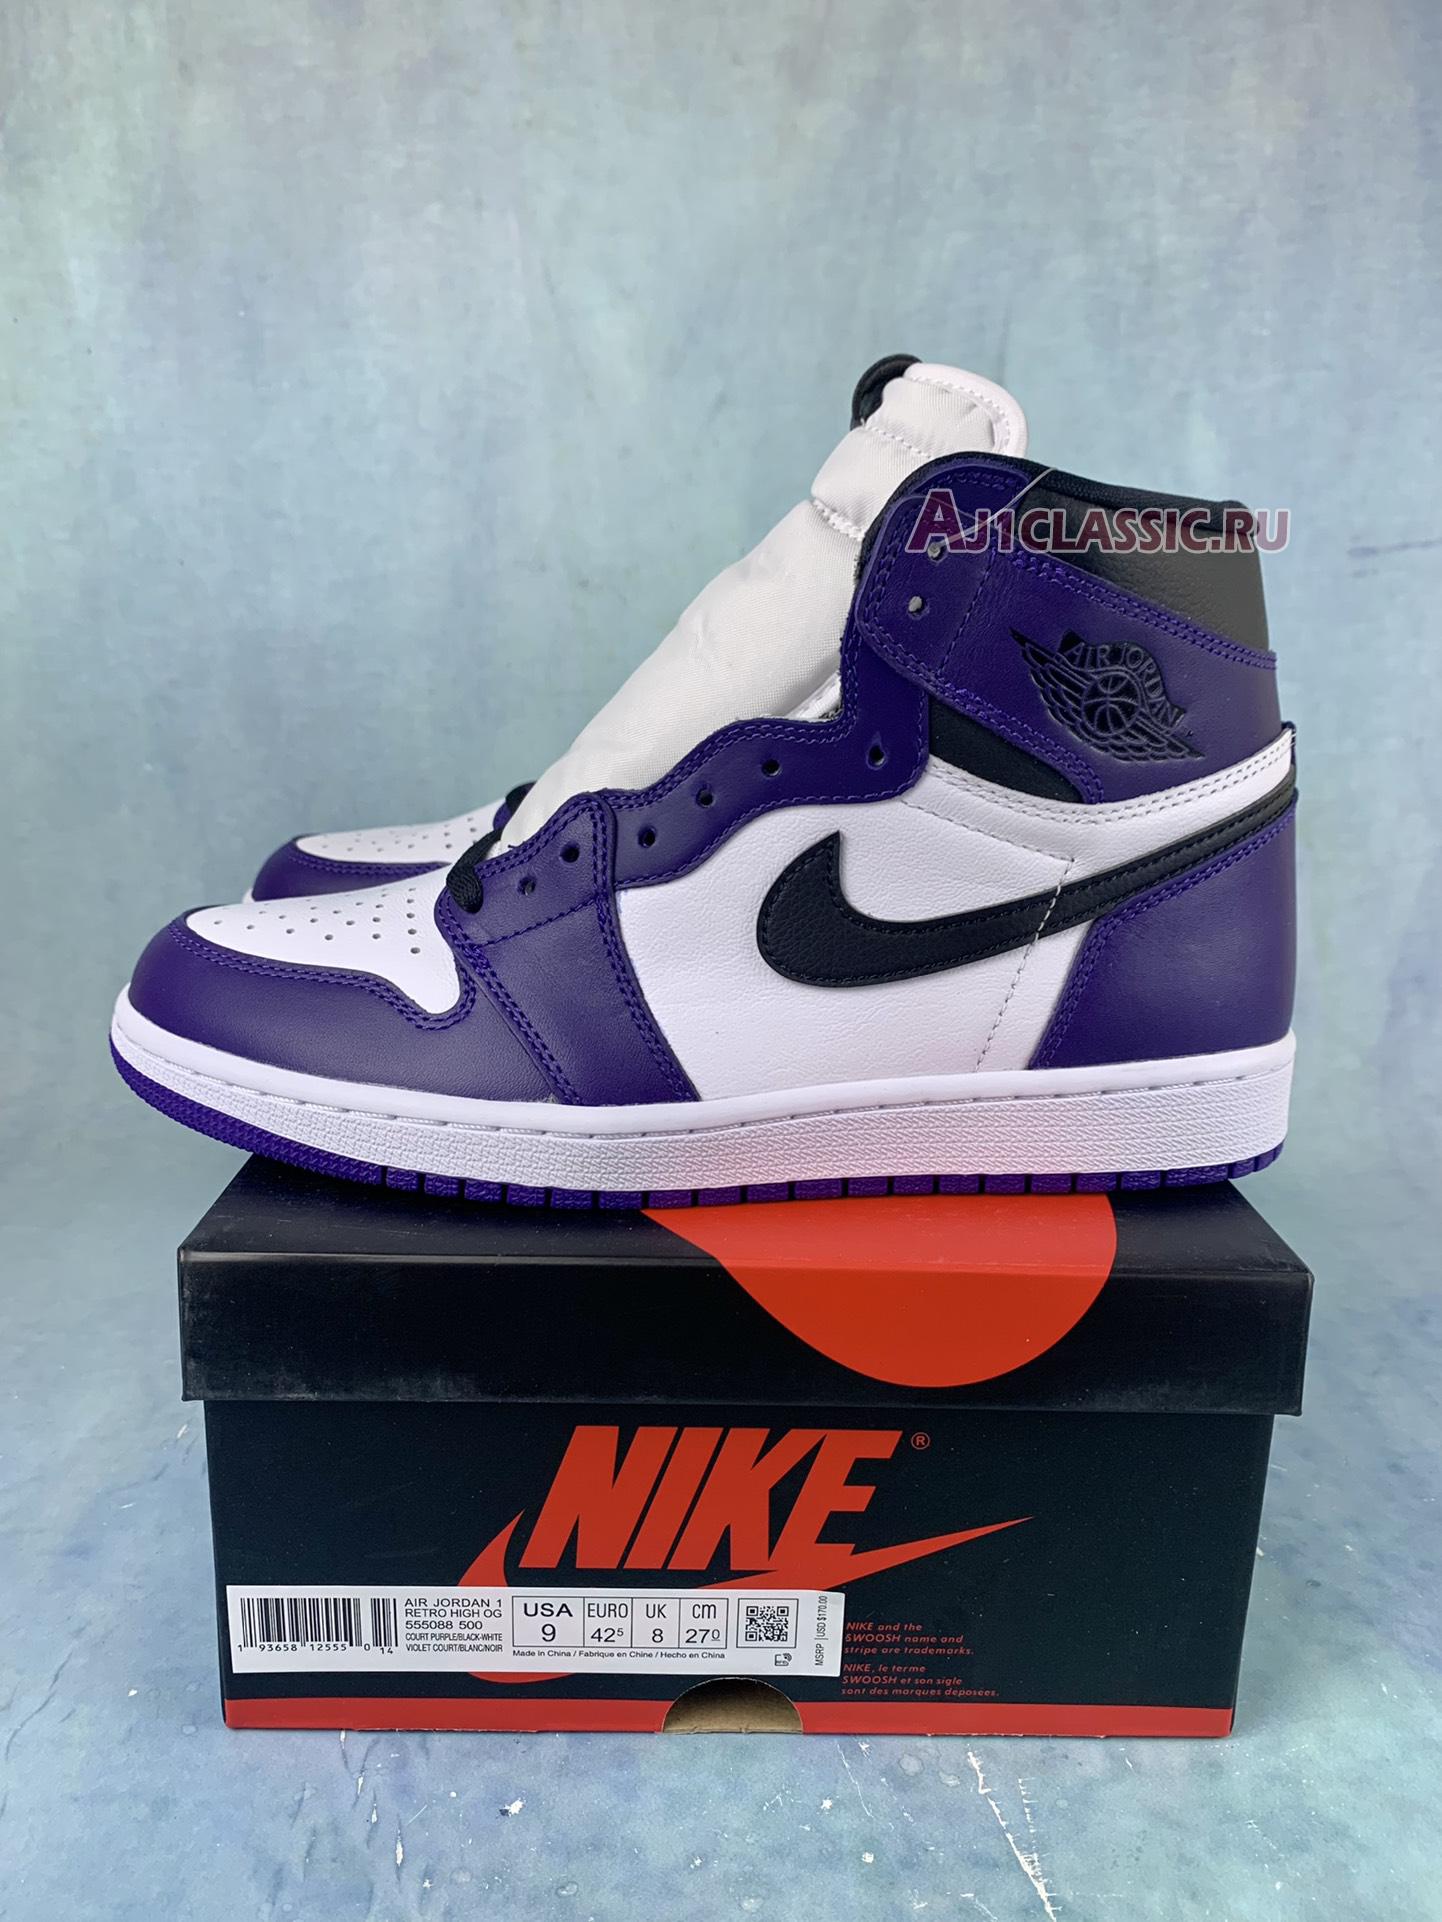 Air Jordan 1 High OG "Court Purple" 555088-500-2